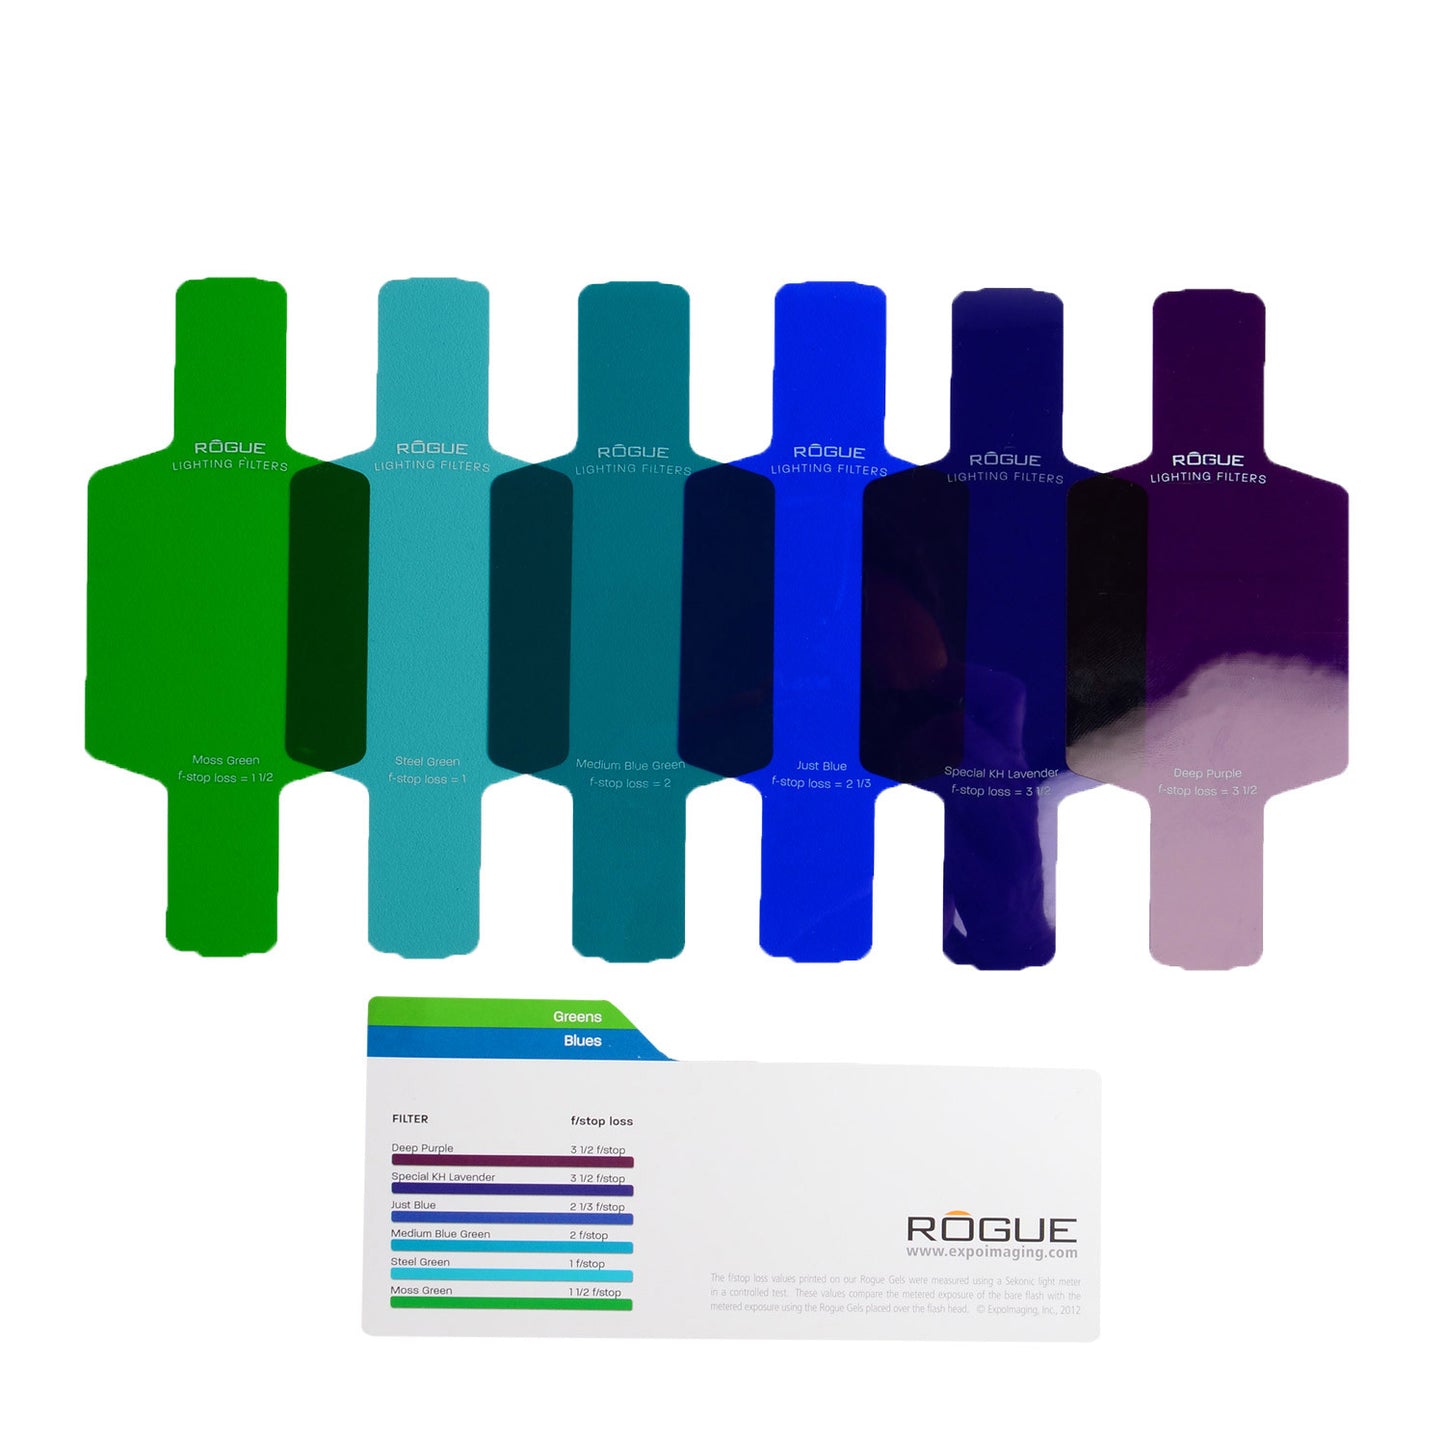 
                  
                    Rogue Flash Gels: Kit de filtros combinados
                  
                